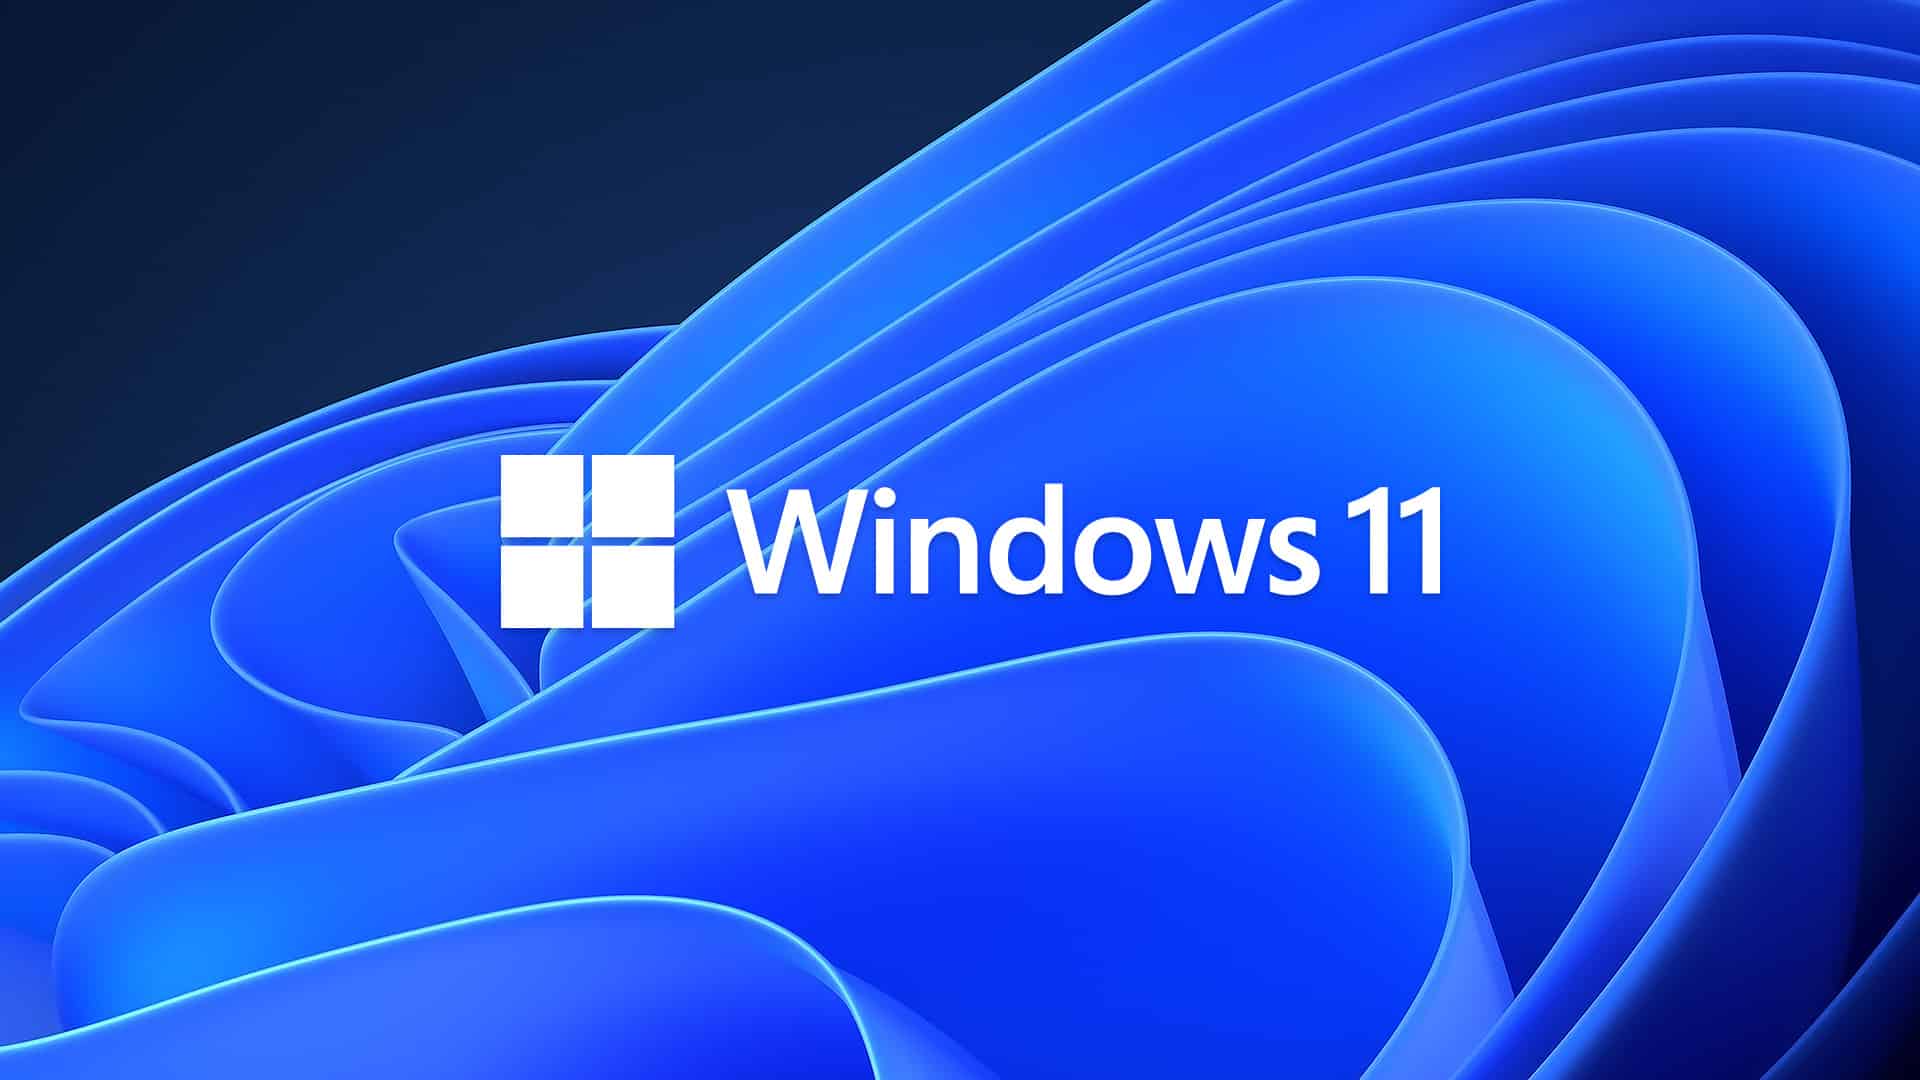 Interaktive Plauderstunde zu Windows 11